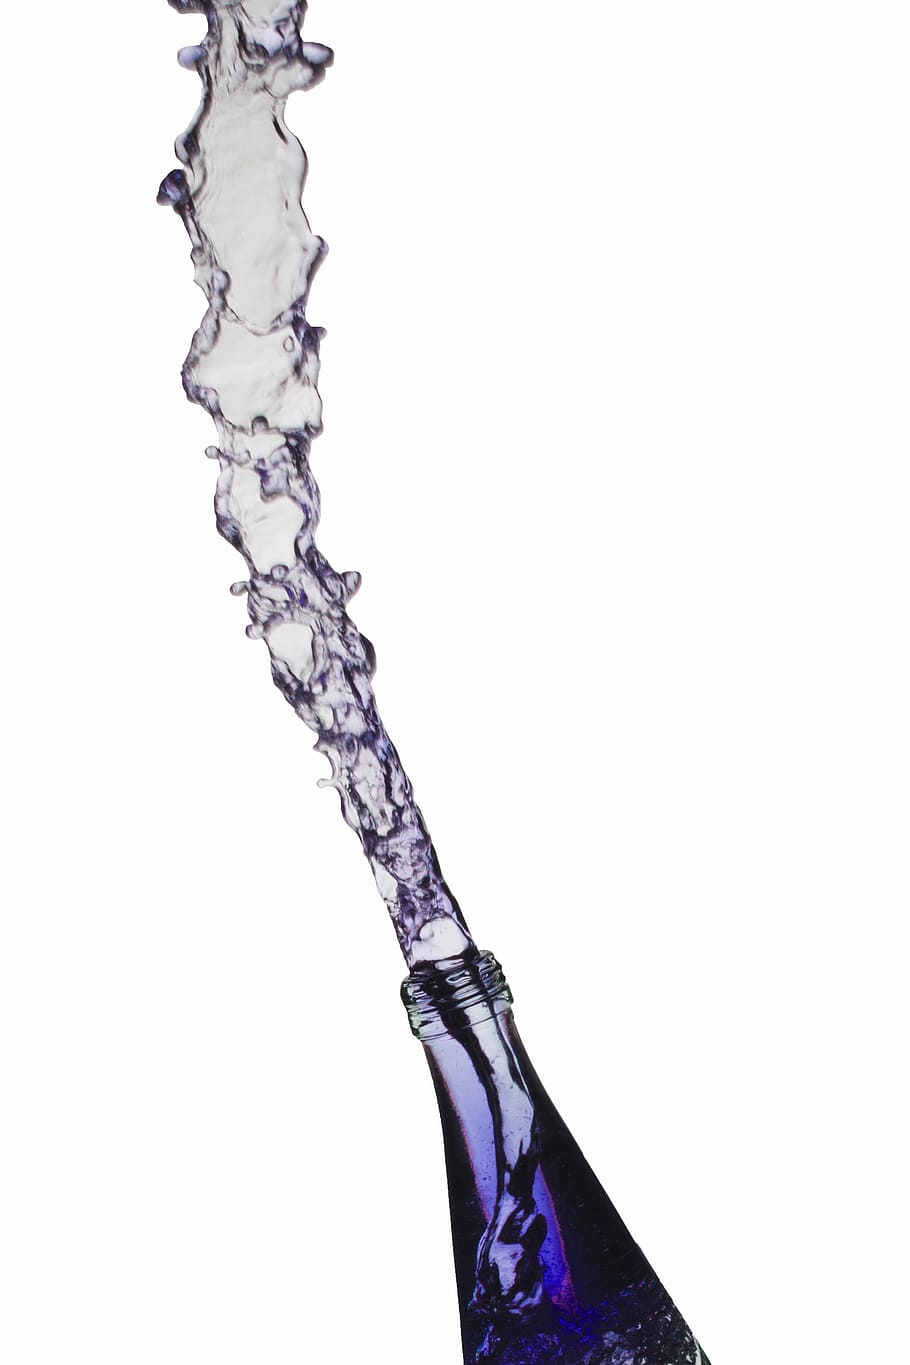 garrafa, cuspir, ilustração da água, água, cor, flash, movimento, curioso, líquido, recipiente